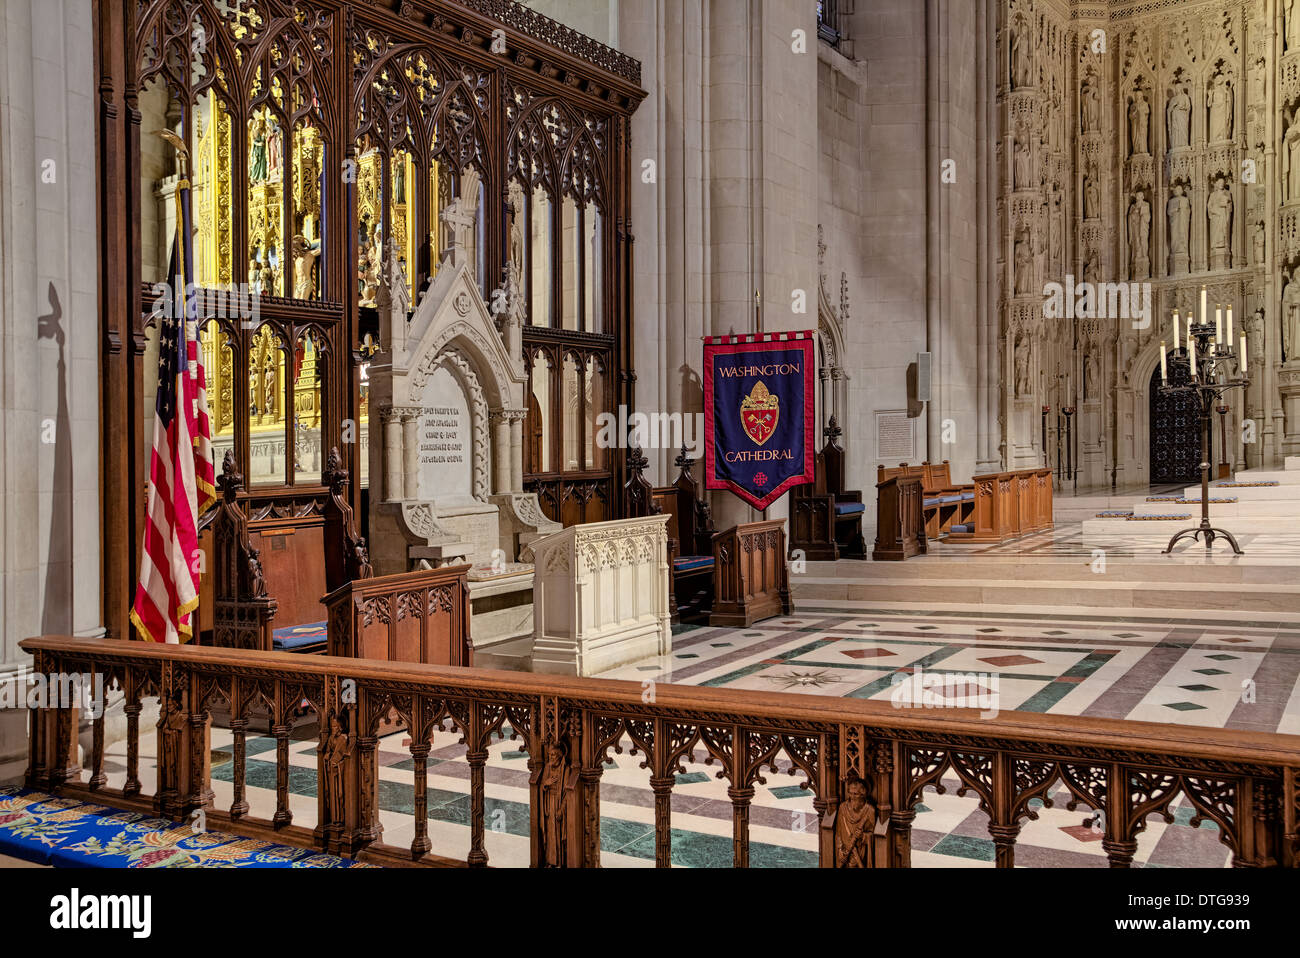 Vue de côté de l'autel à la cathédrale nationale de Washington est grand autel. Banque D'Images